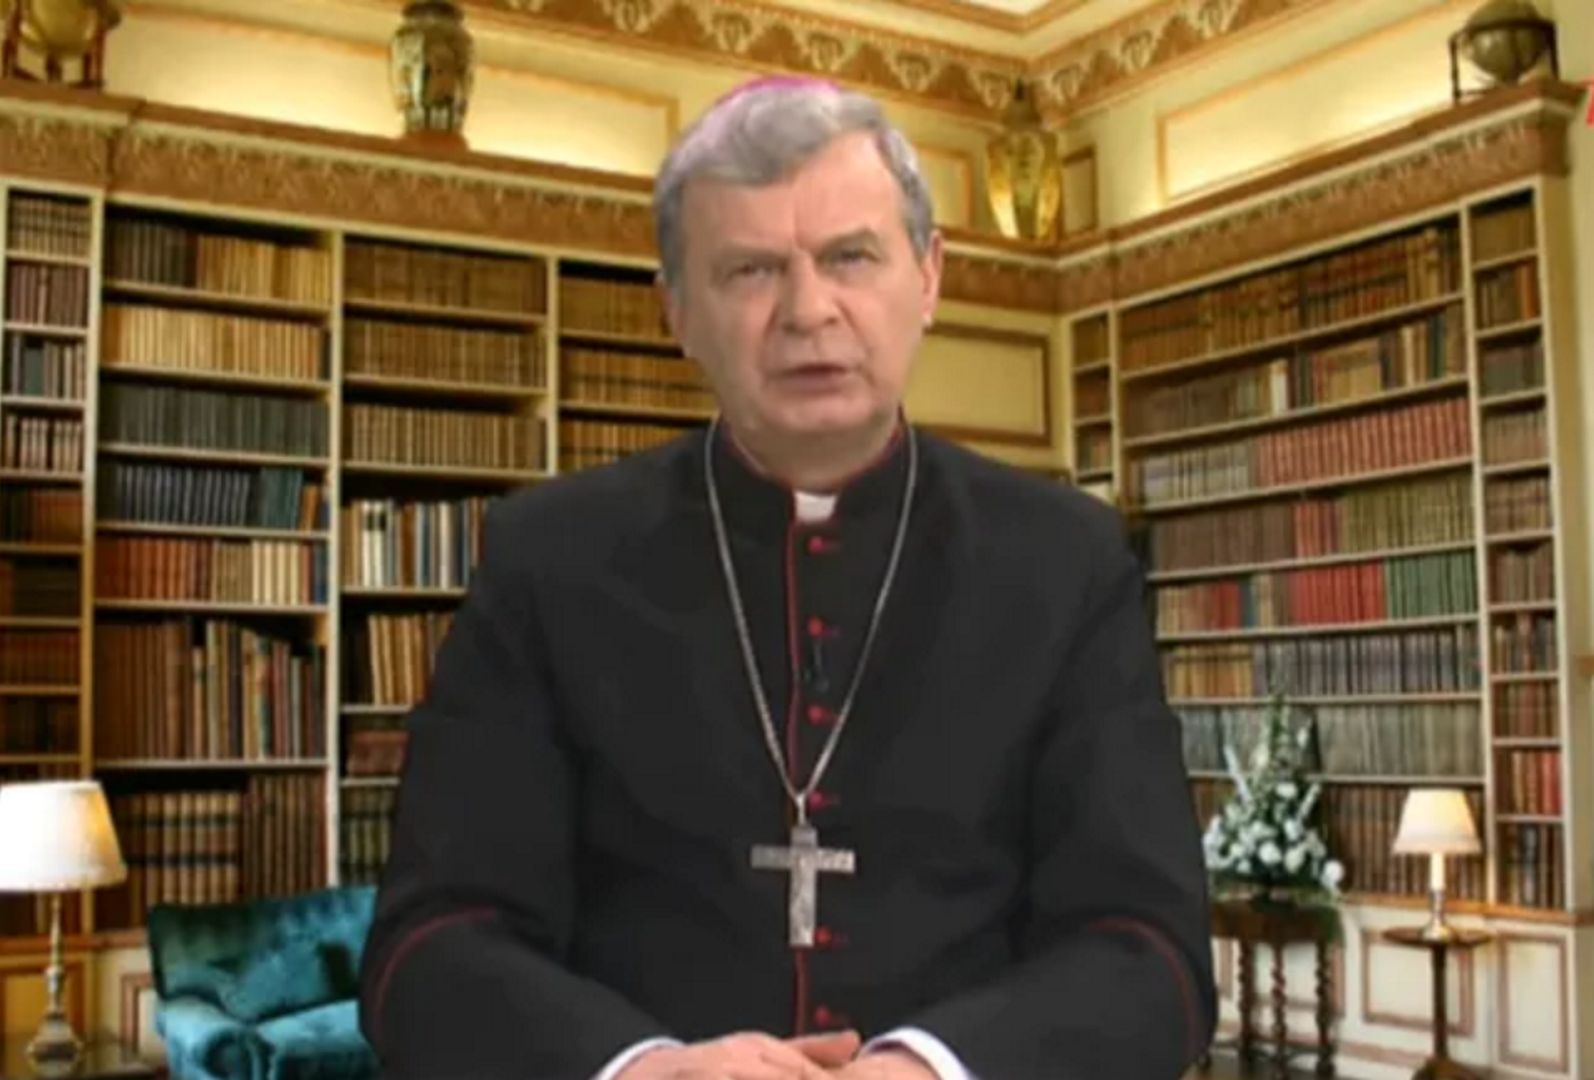 Biskup zaprasza na modlitwę o trzeźwość narodu. "Żeby Polacy byli trzeźwi"